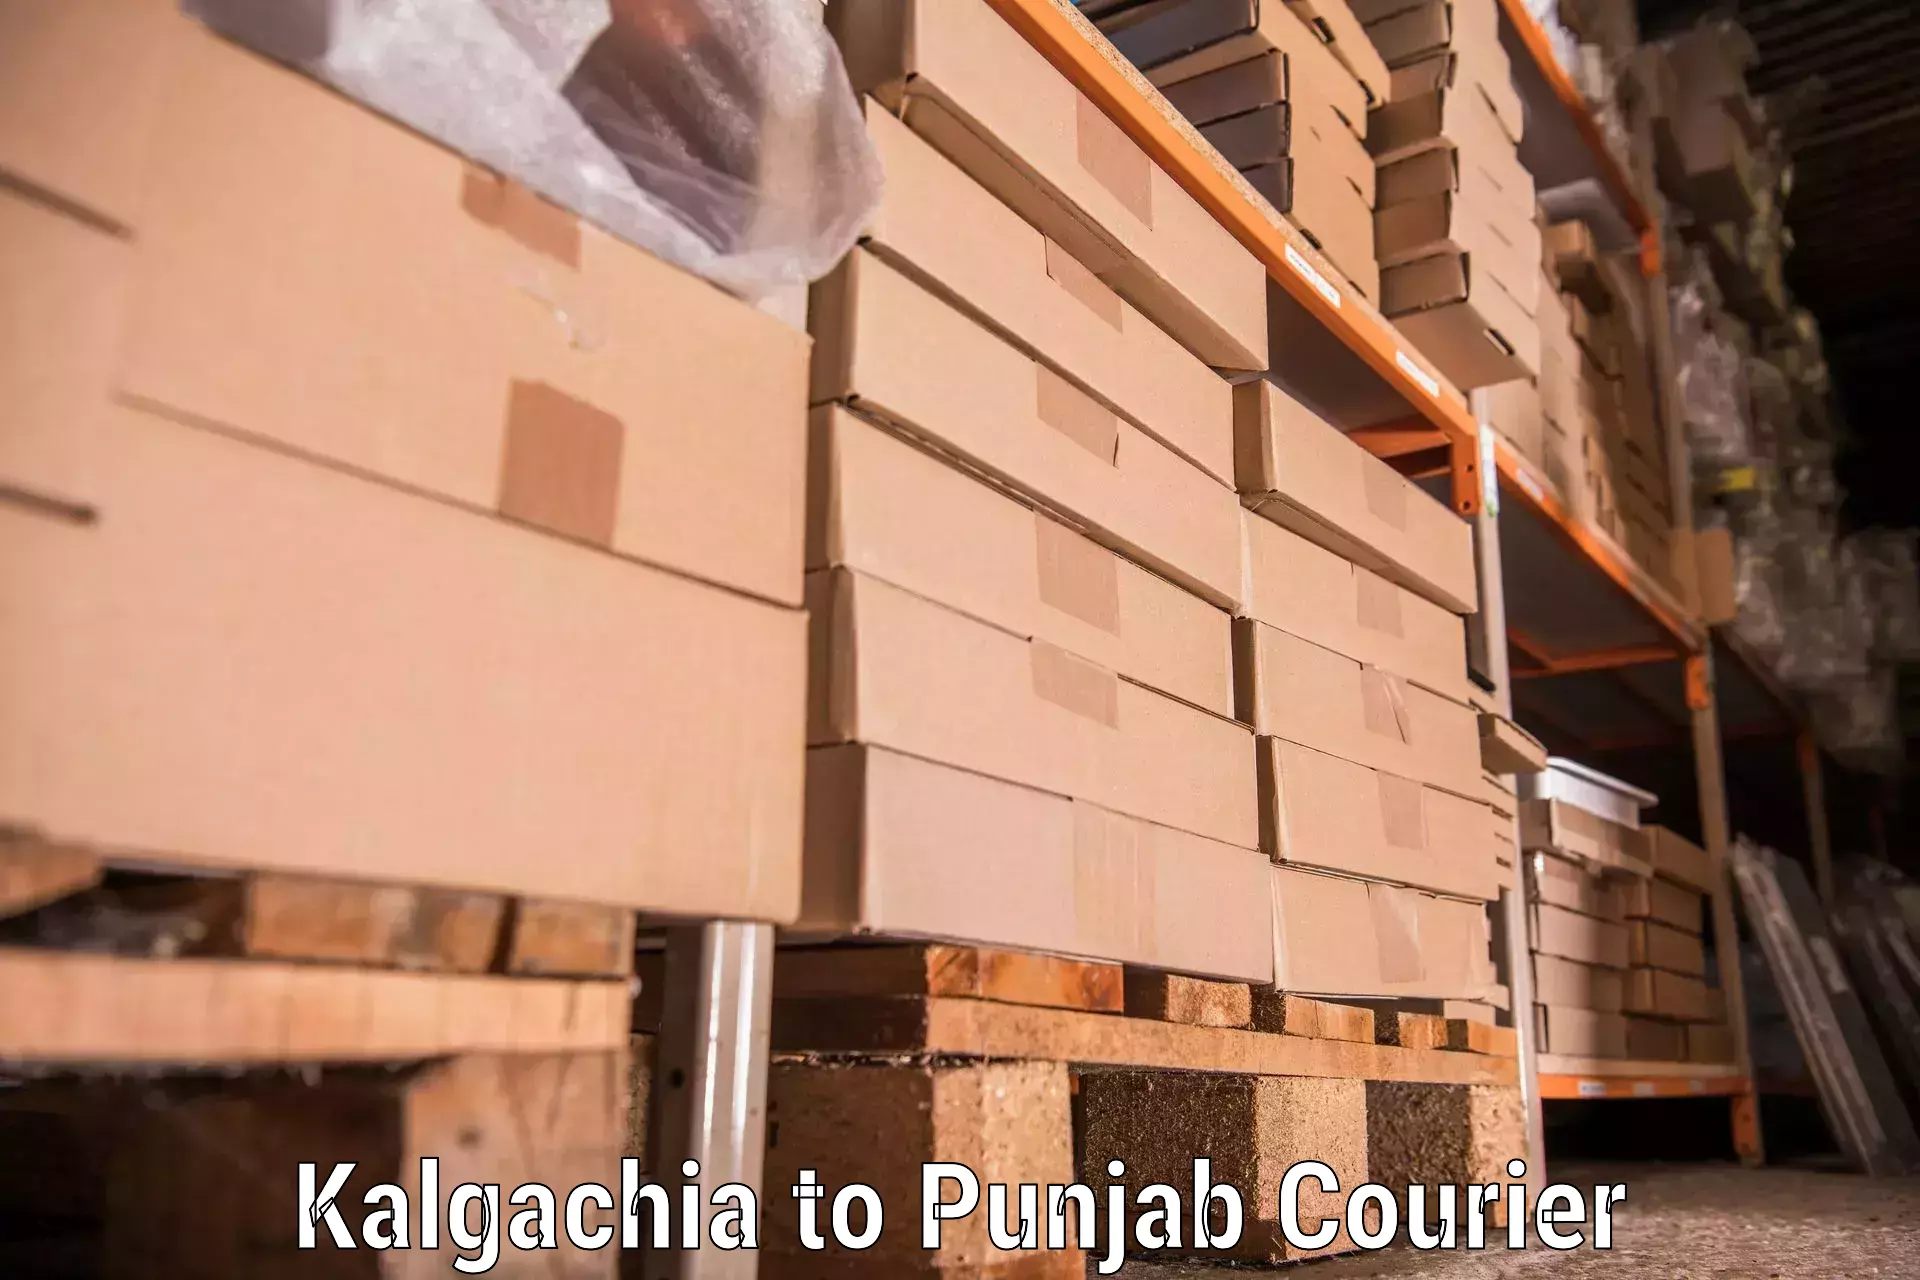 Furniture relocation experts Kalgachia to Anandpur Sahib